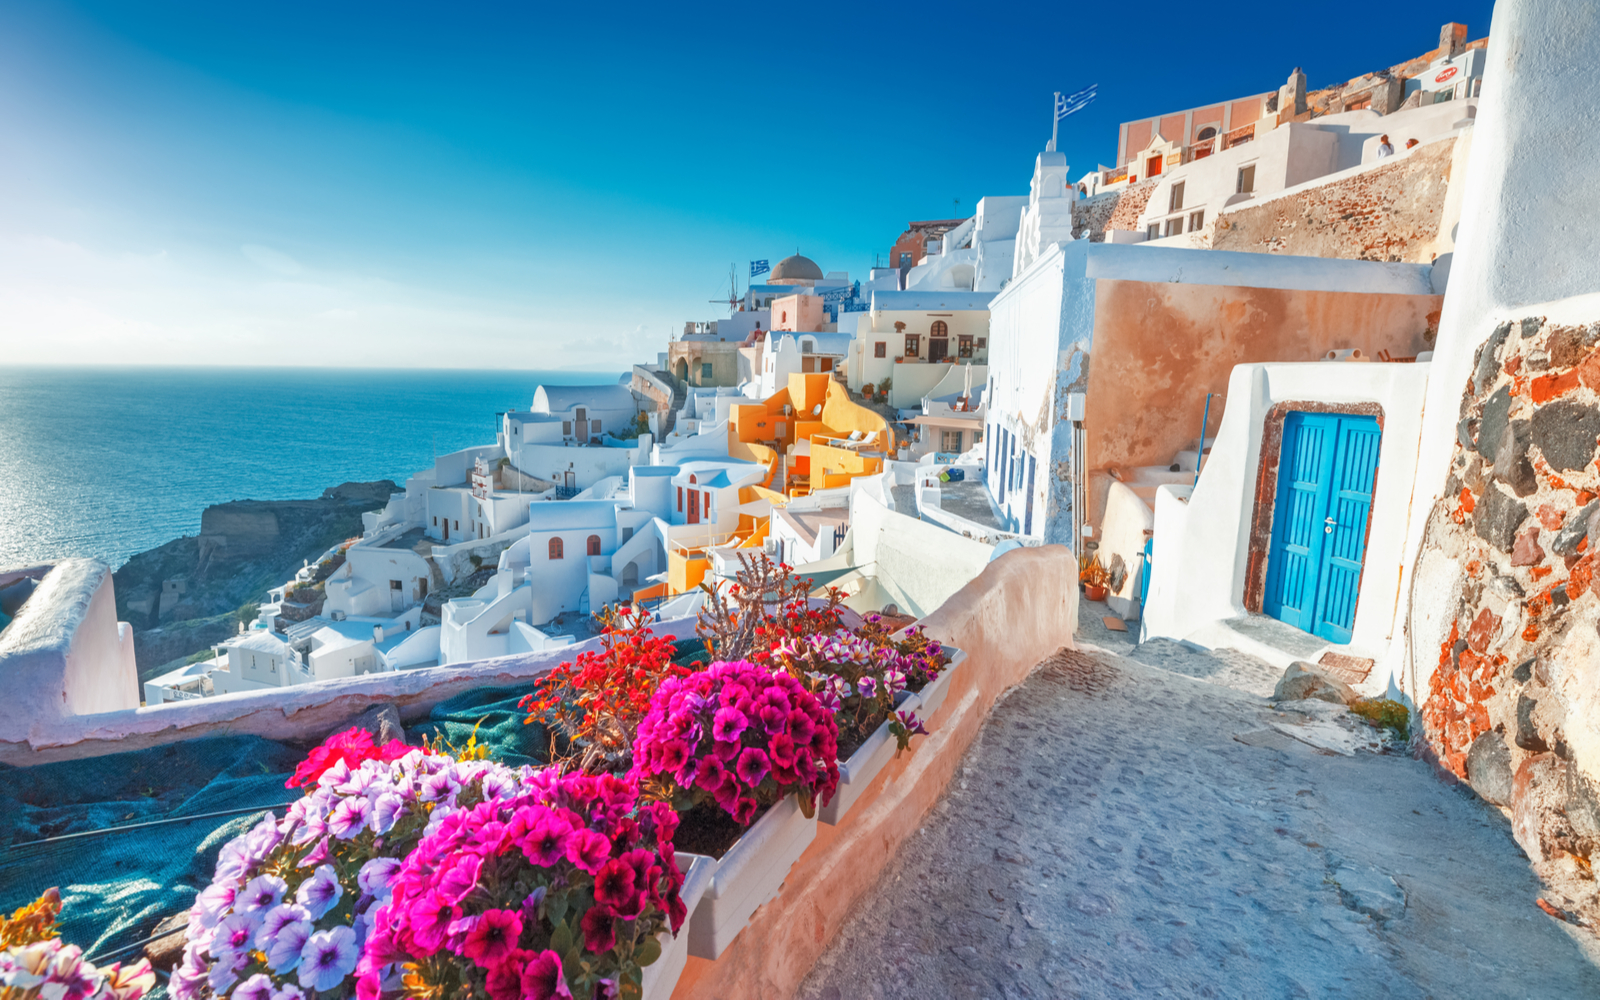 Is Greece Safe? | Travel Tips & Safety Concerns